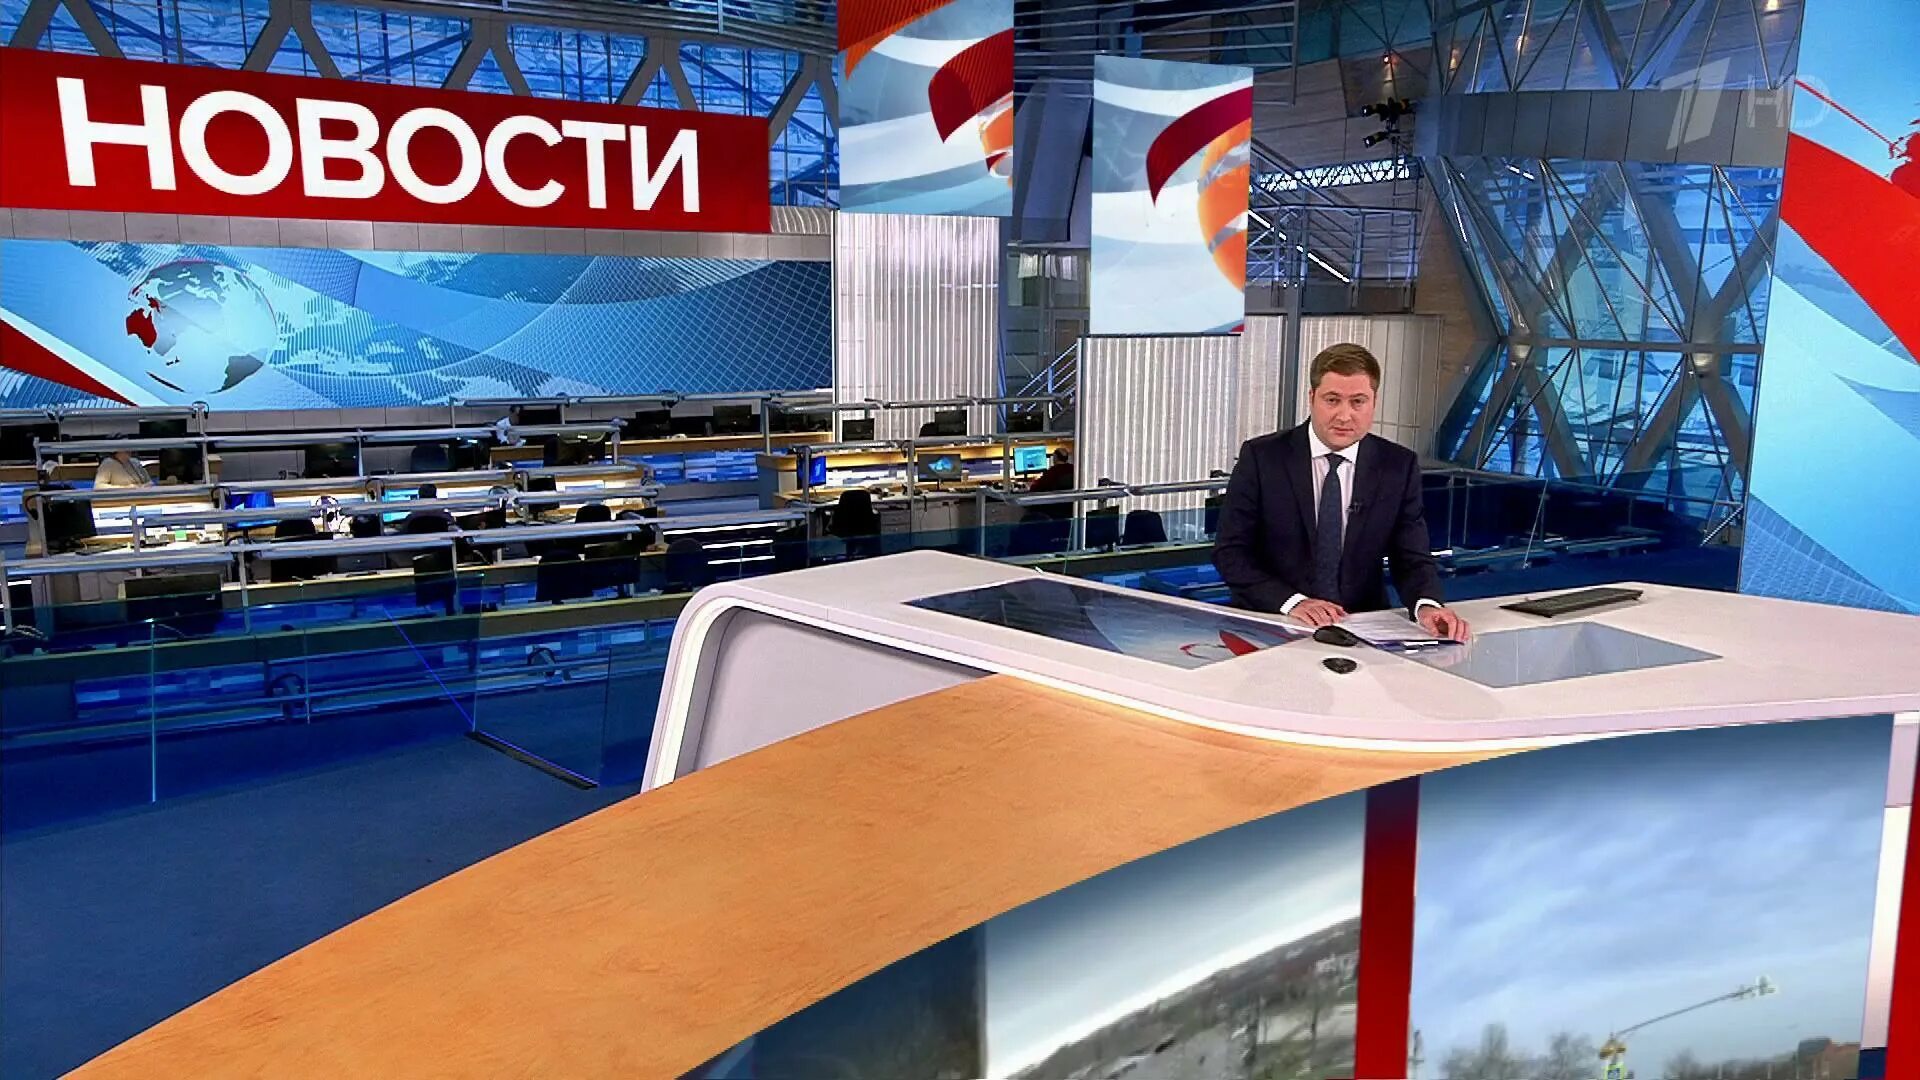 Информационный канал первый канал. Часы первого канала. Российское Телевидение.